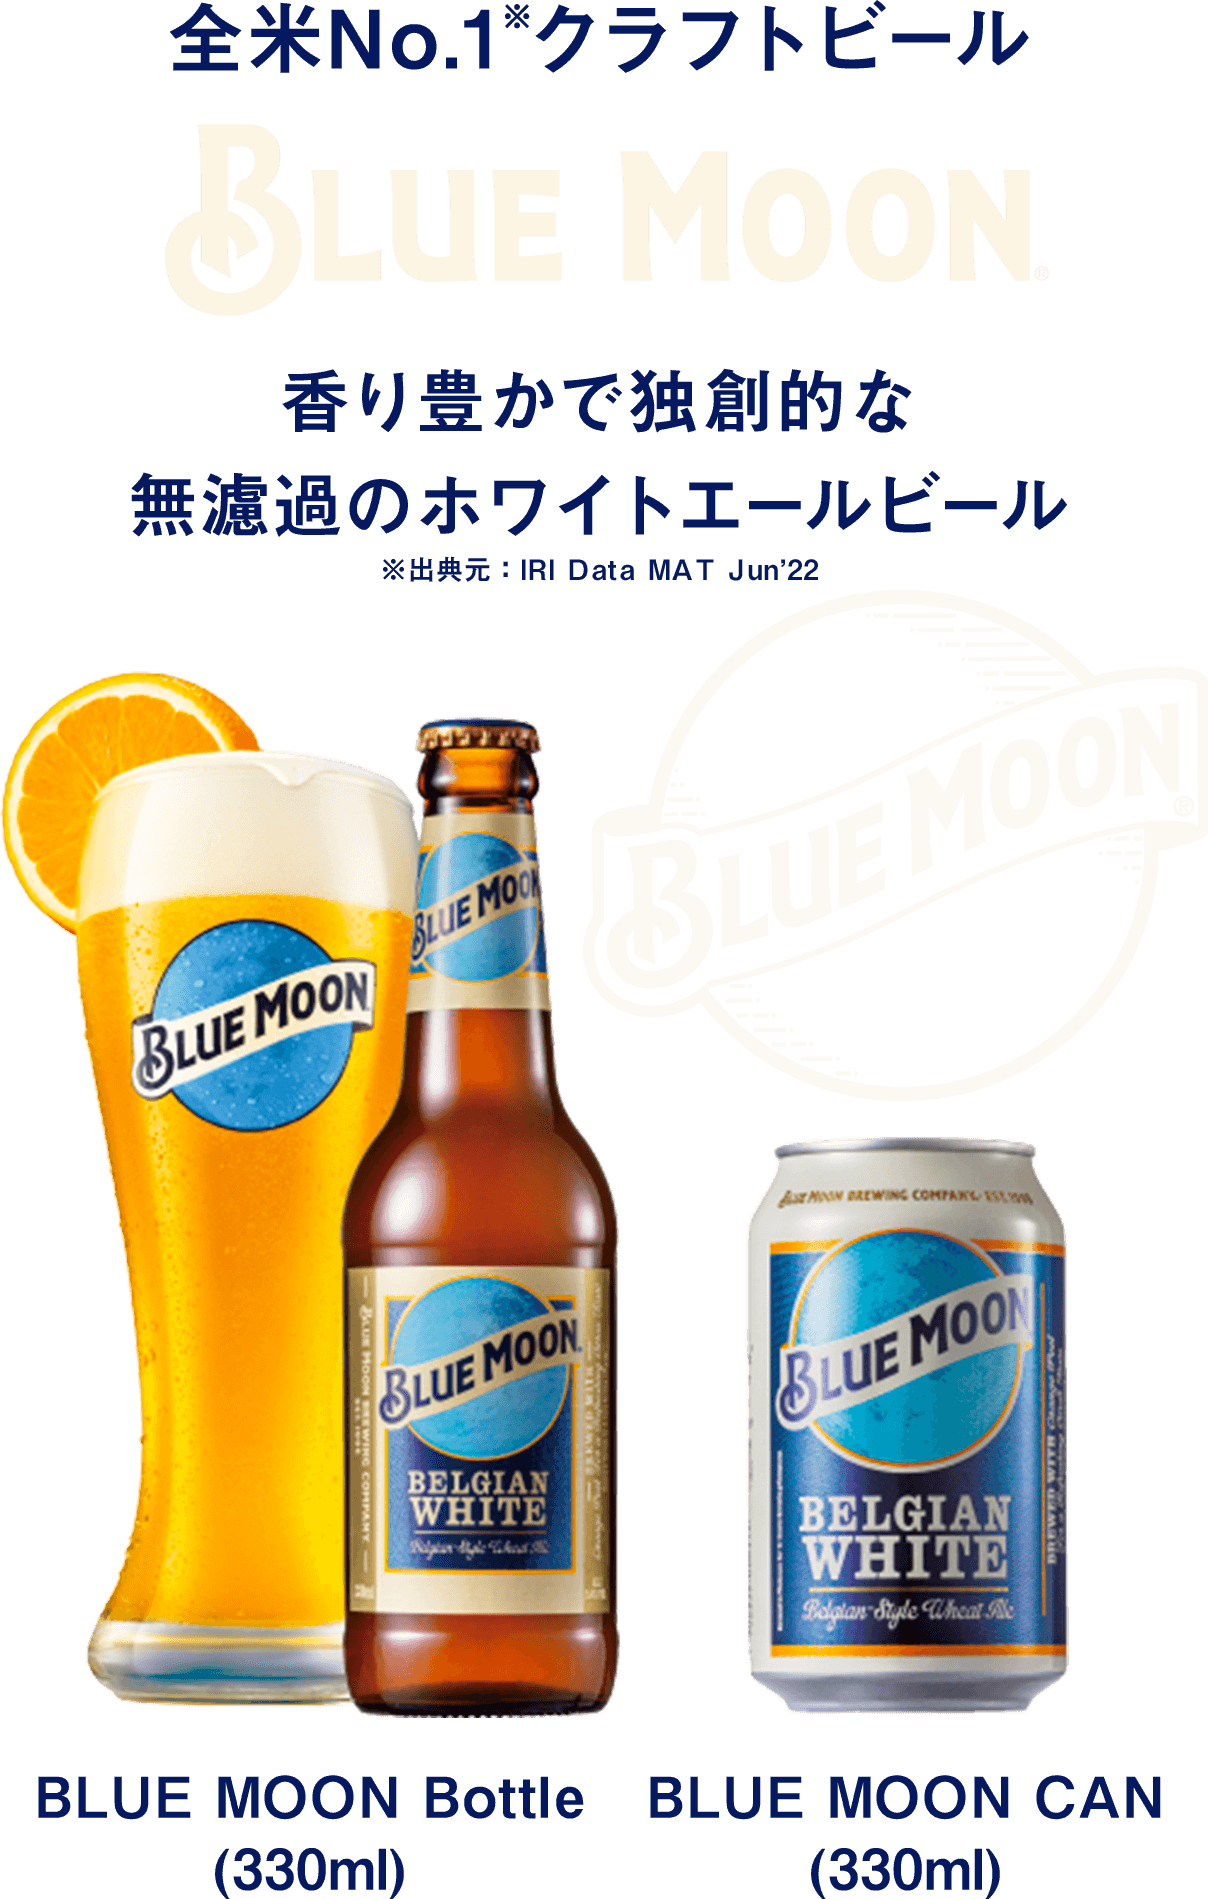 全米No.1※クラフトビール「BLUE MOON」香り豊かで独創的な無濾過のホワイトエールビール　※出典元：IRI Data MAT Jun’22